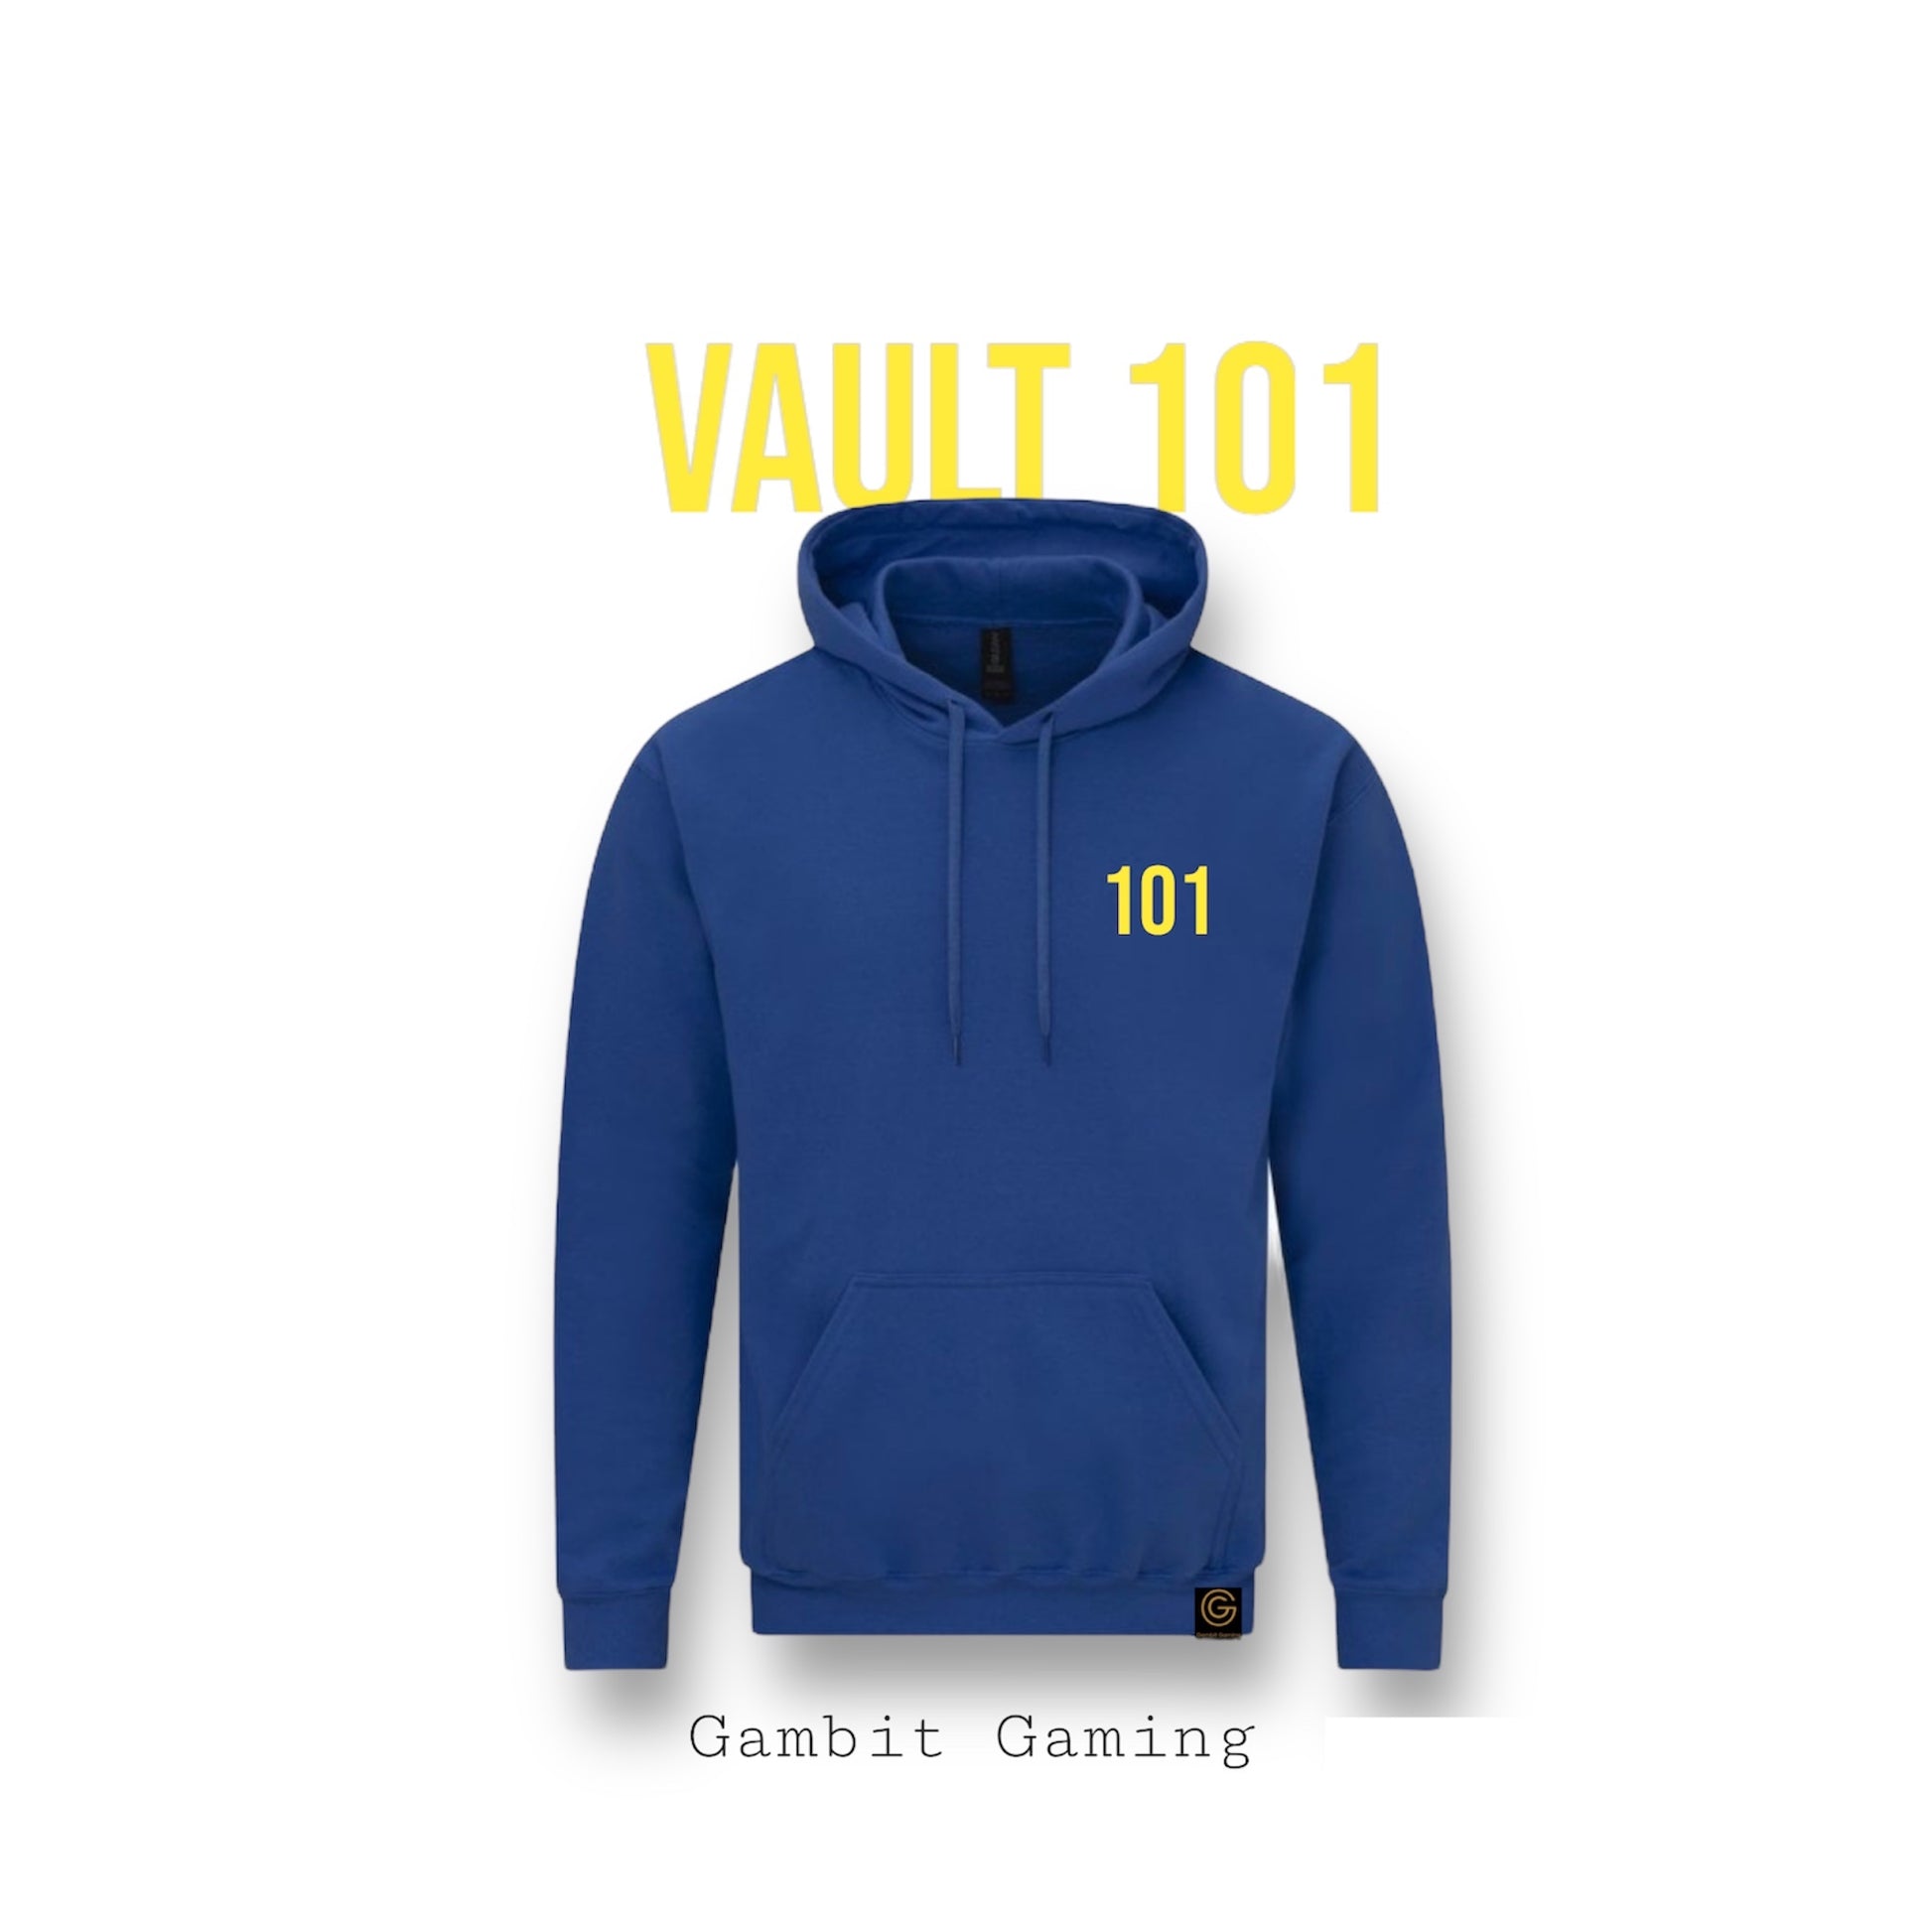 Vault 101 Hoodie - Gambit Gaming